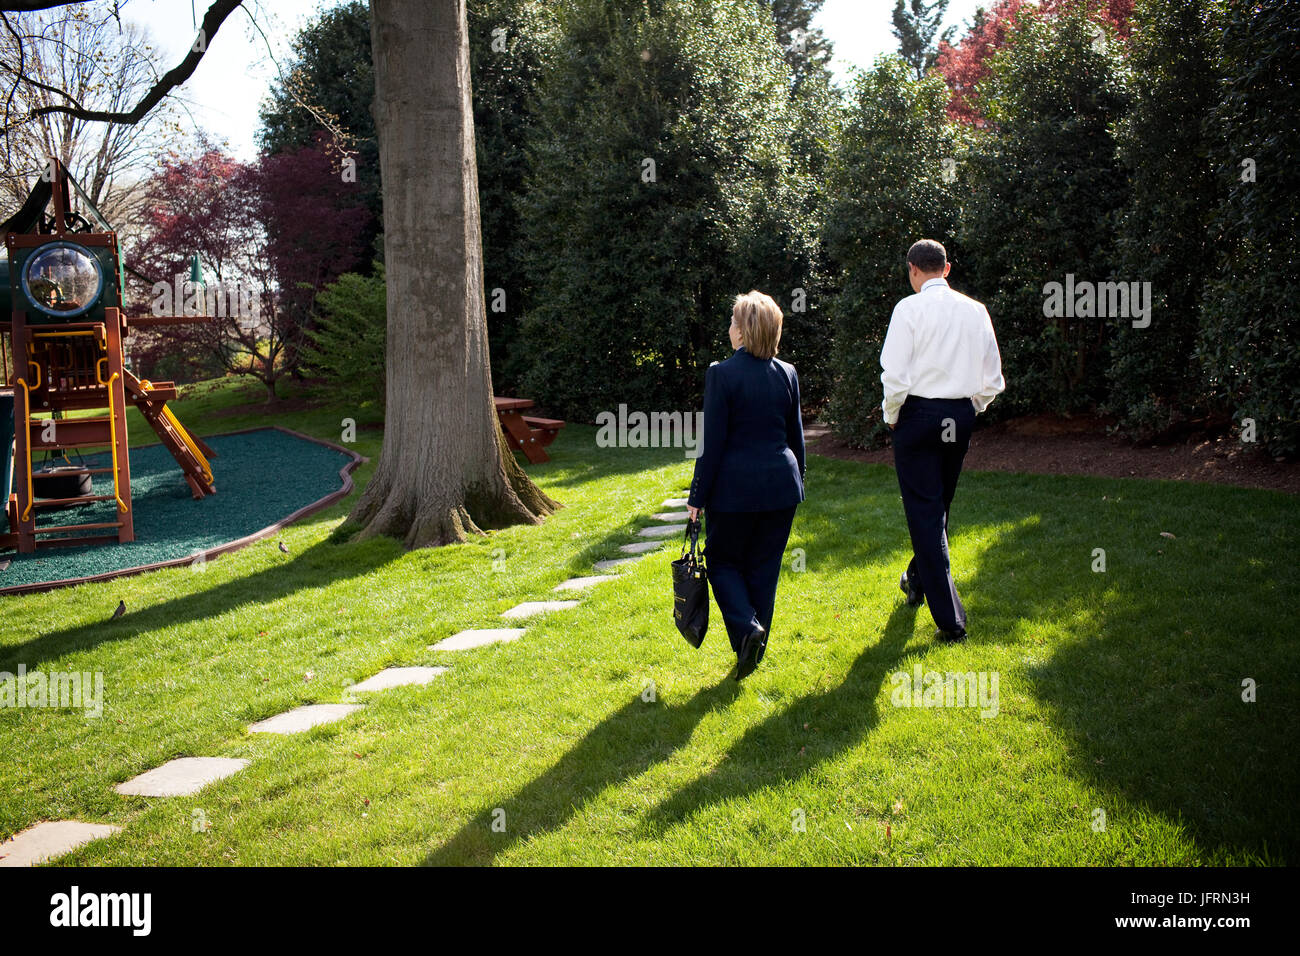 Le président Barack Obama marche avec le secrétaire d'État, Mme Hillary Rodham Clinton, à l'extérieur du bureau ovale à la suite de leur réunion du 9 avril 2009. Photo Officiel de la Maison Blanche par Pete Souza Banque D'Images